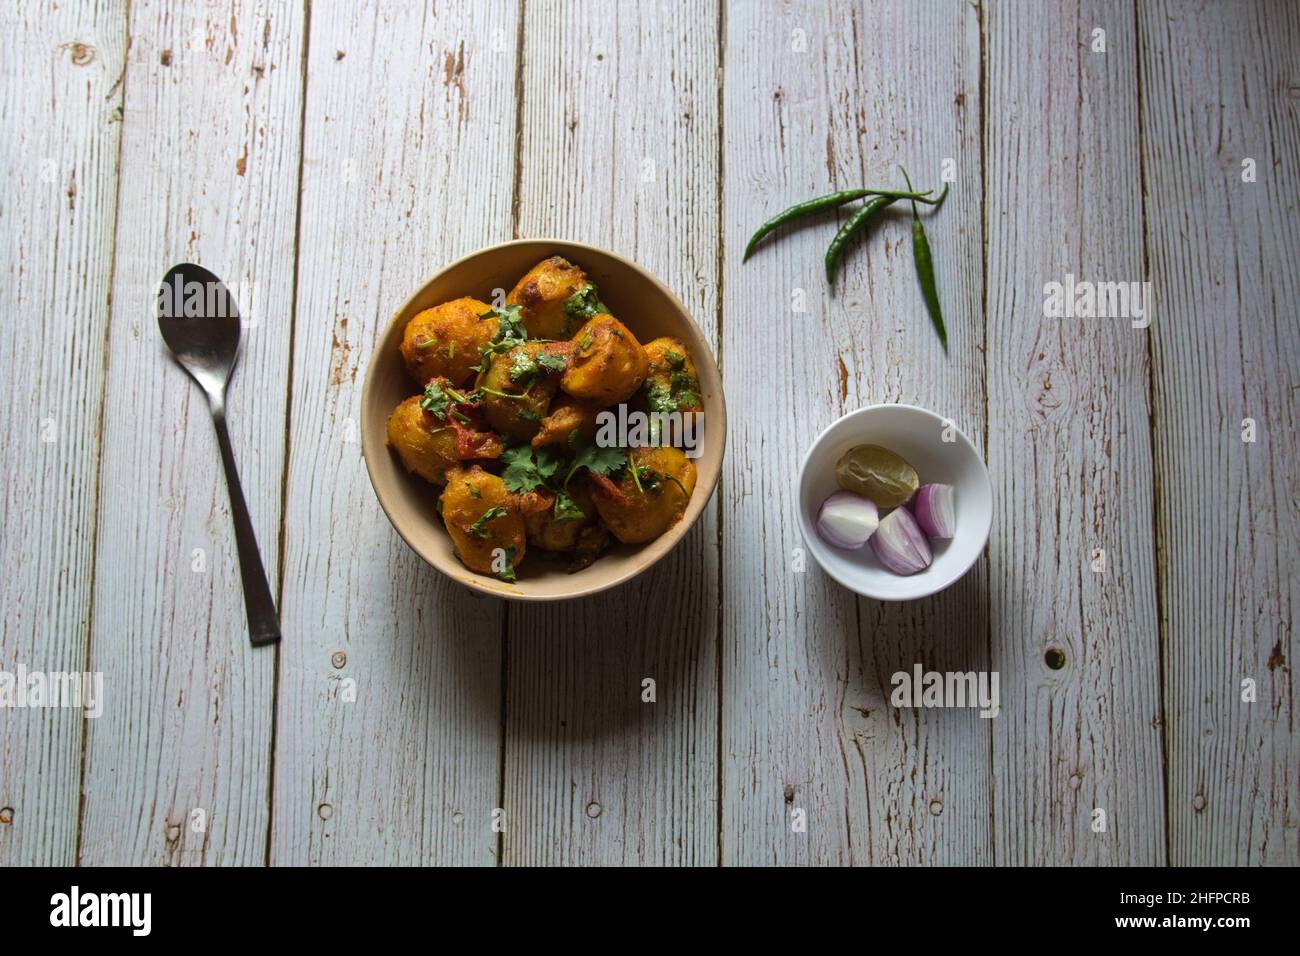 Beliebte indische Lebensmittel Dum aloo oder Kartoffel-Masala Soße in einer Schüssel. Draufsicht. Stockfoto